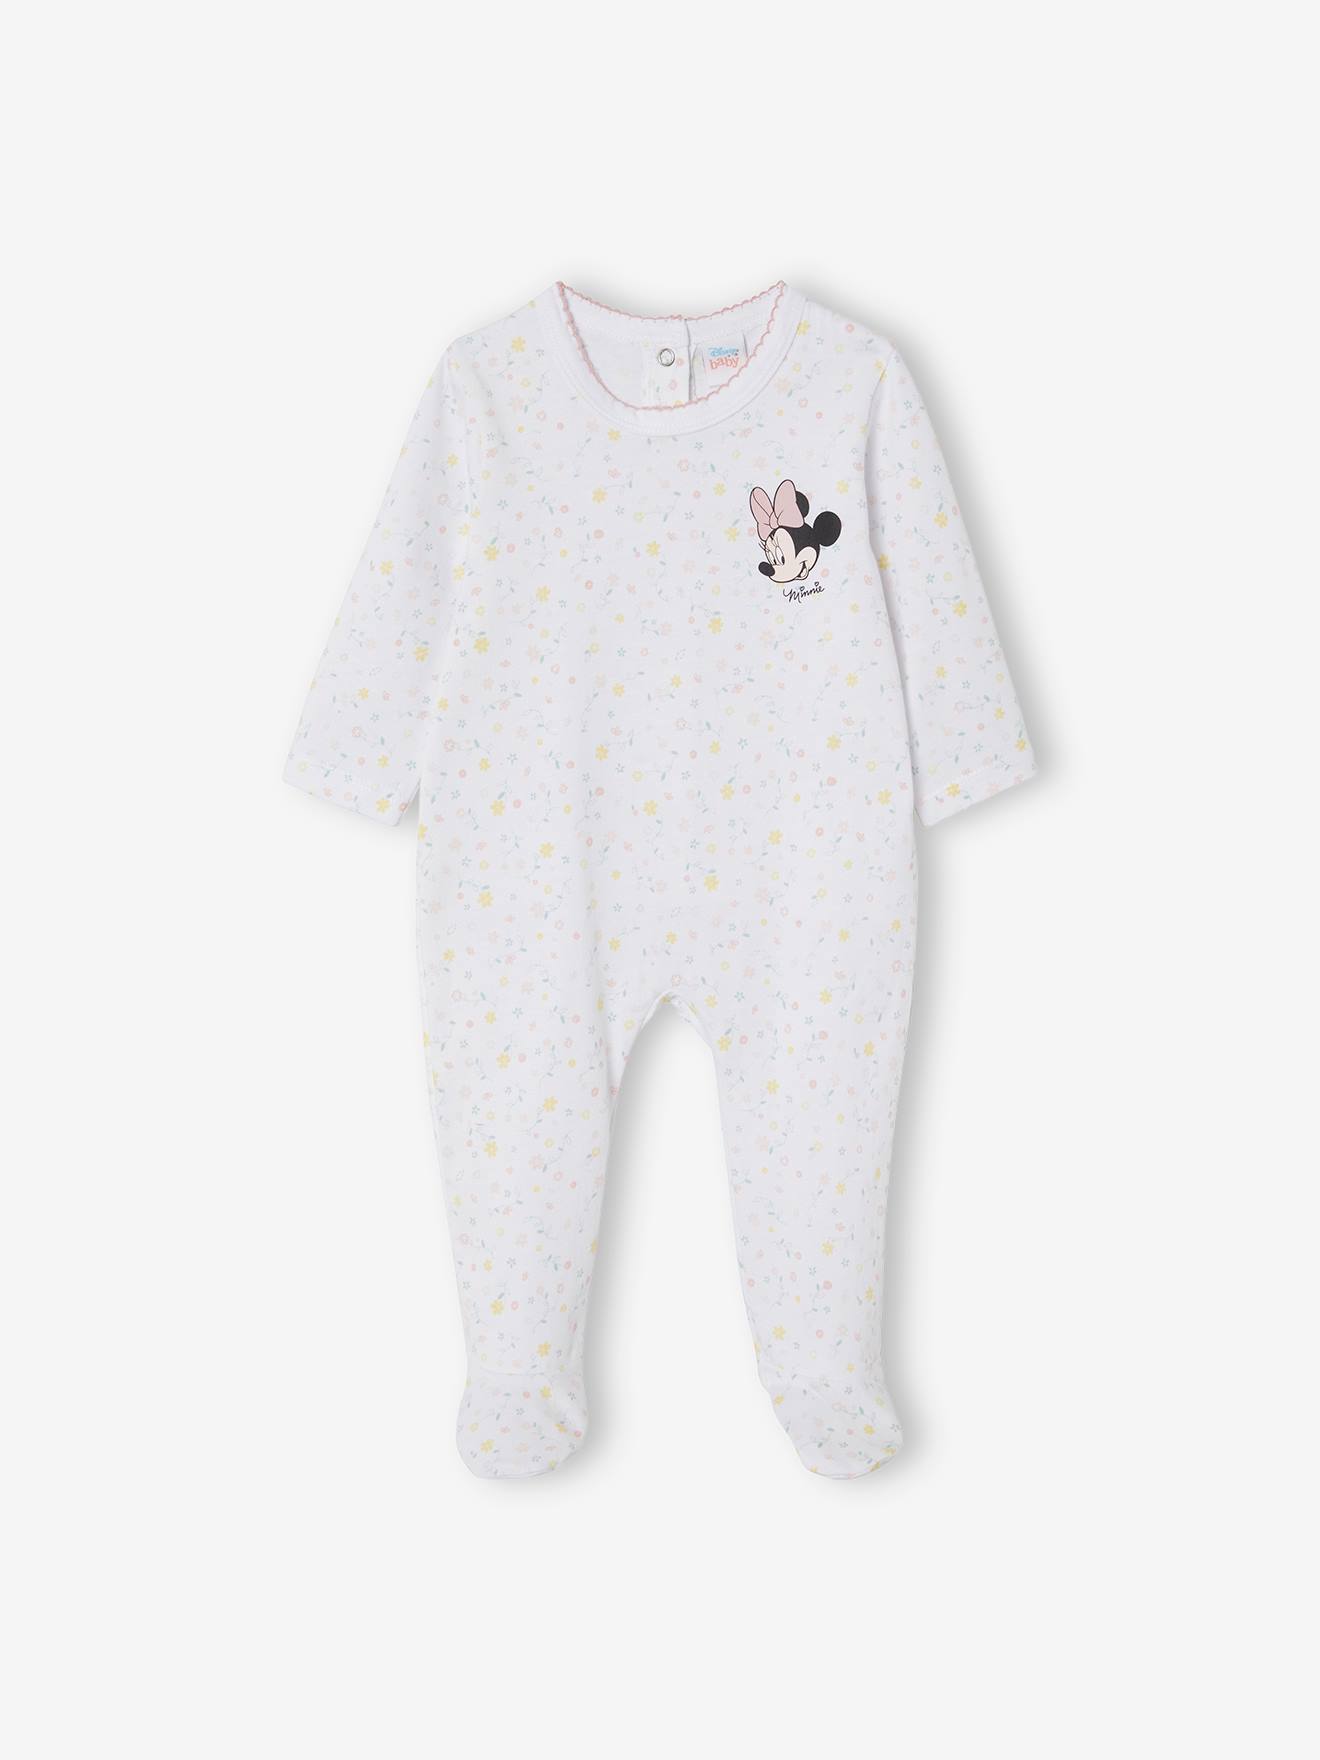 Visiter la boutique DisneyDisney Minnie Mouse Ensemble Pyjama en Coton pour bébé Fille 